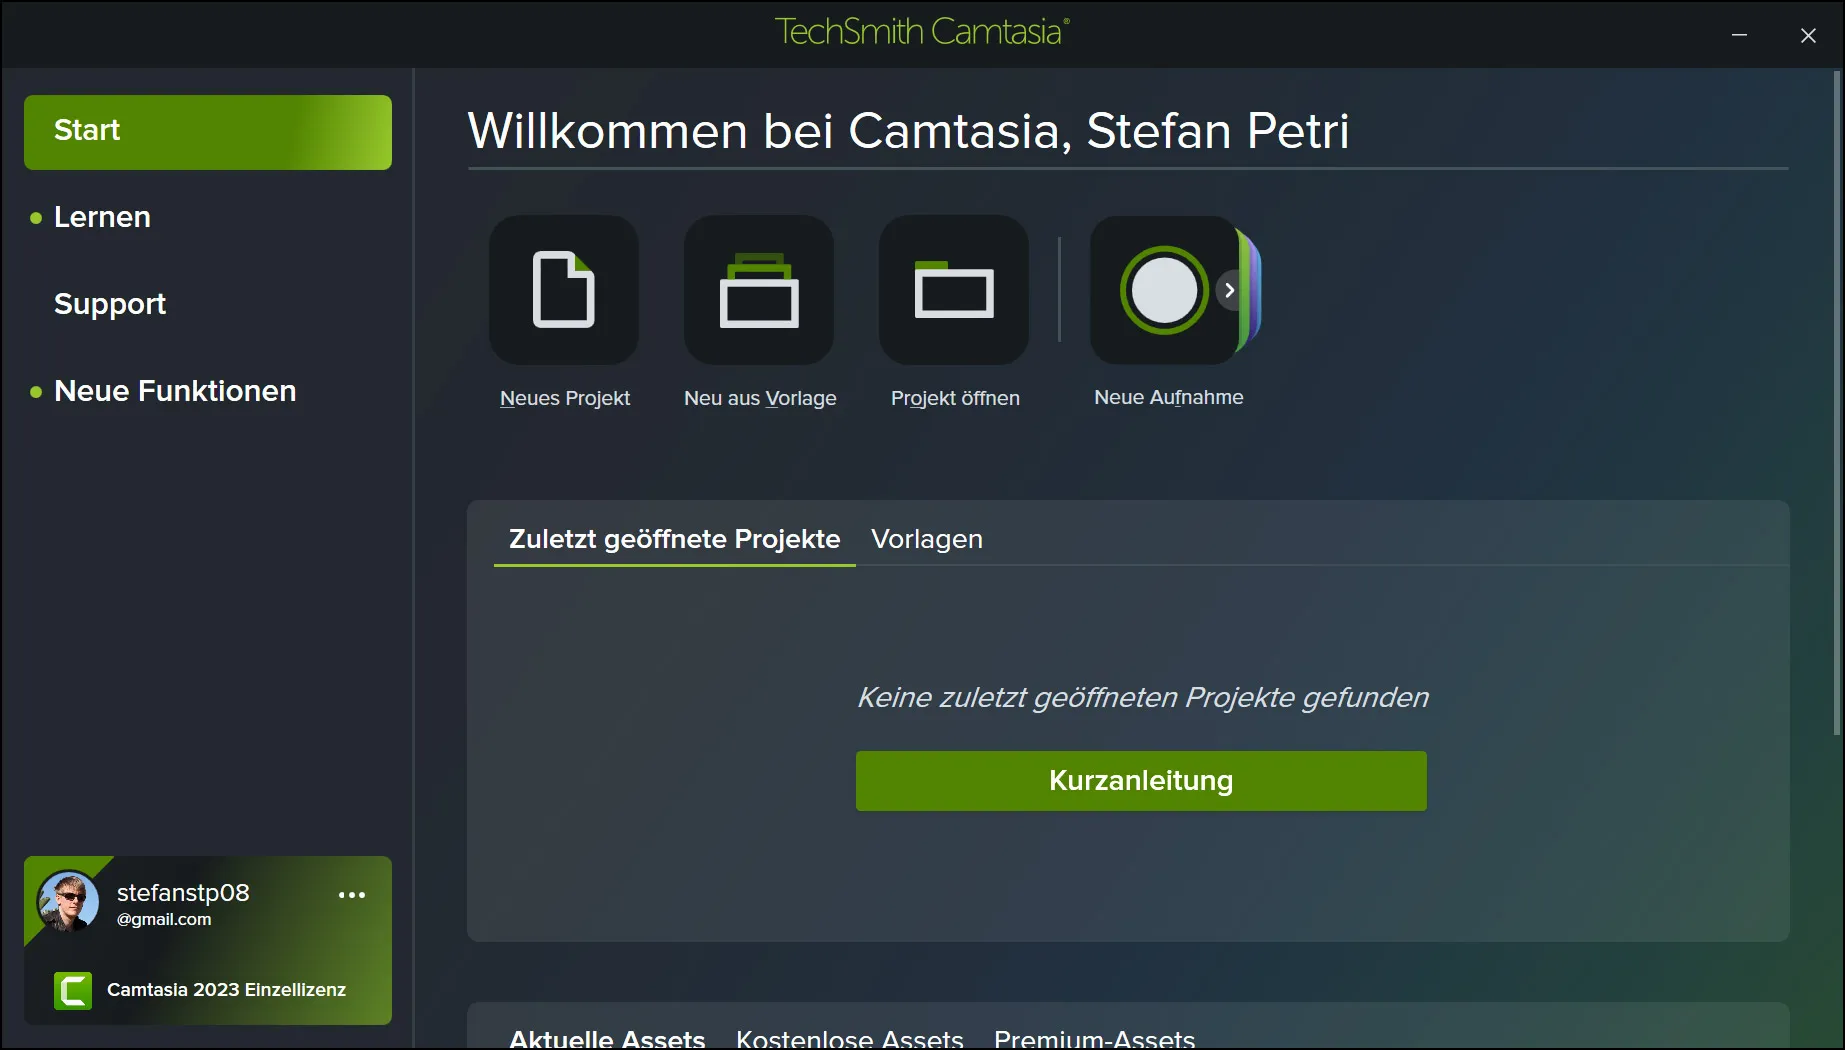 Camtasia Startscreen - Das beste Tool zur Bildschirmaufnahme 